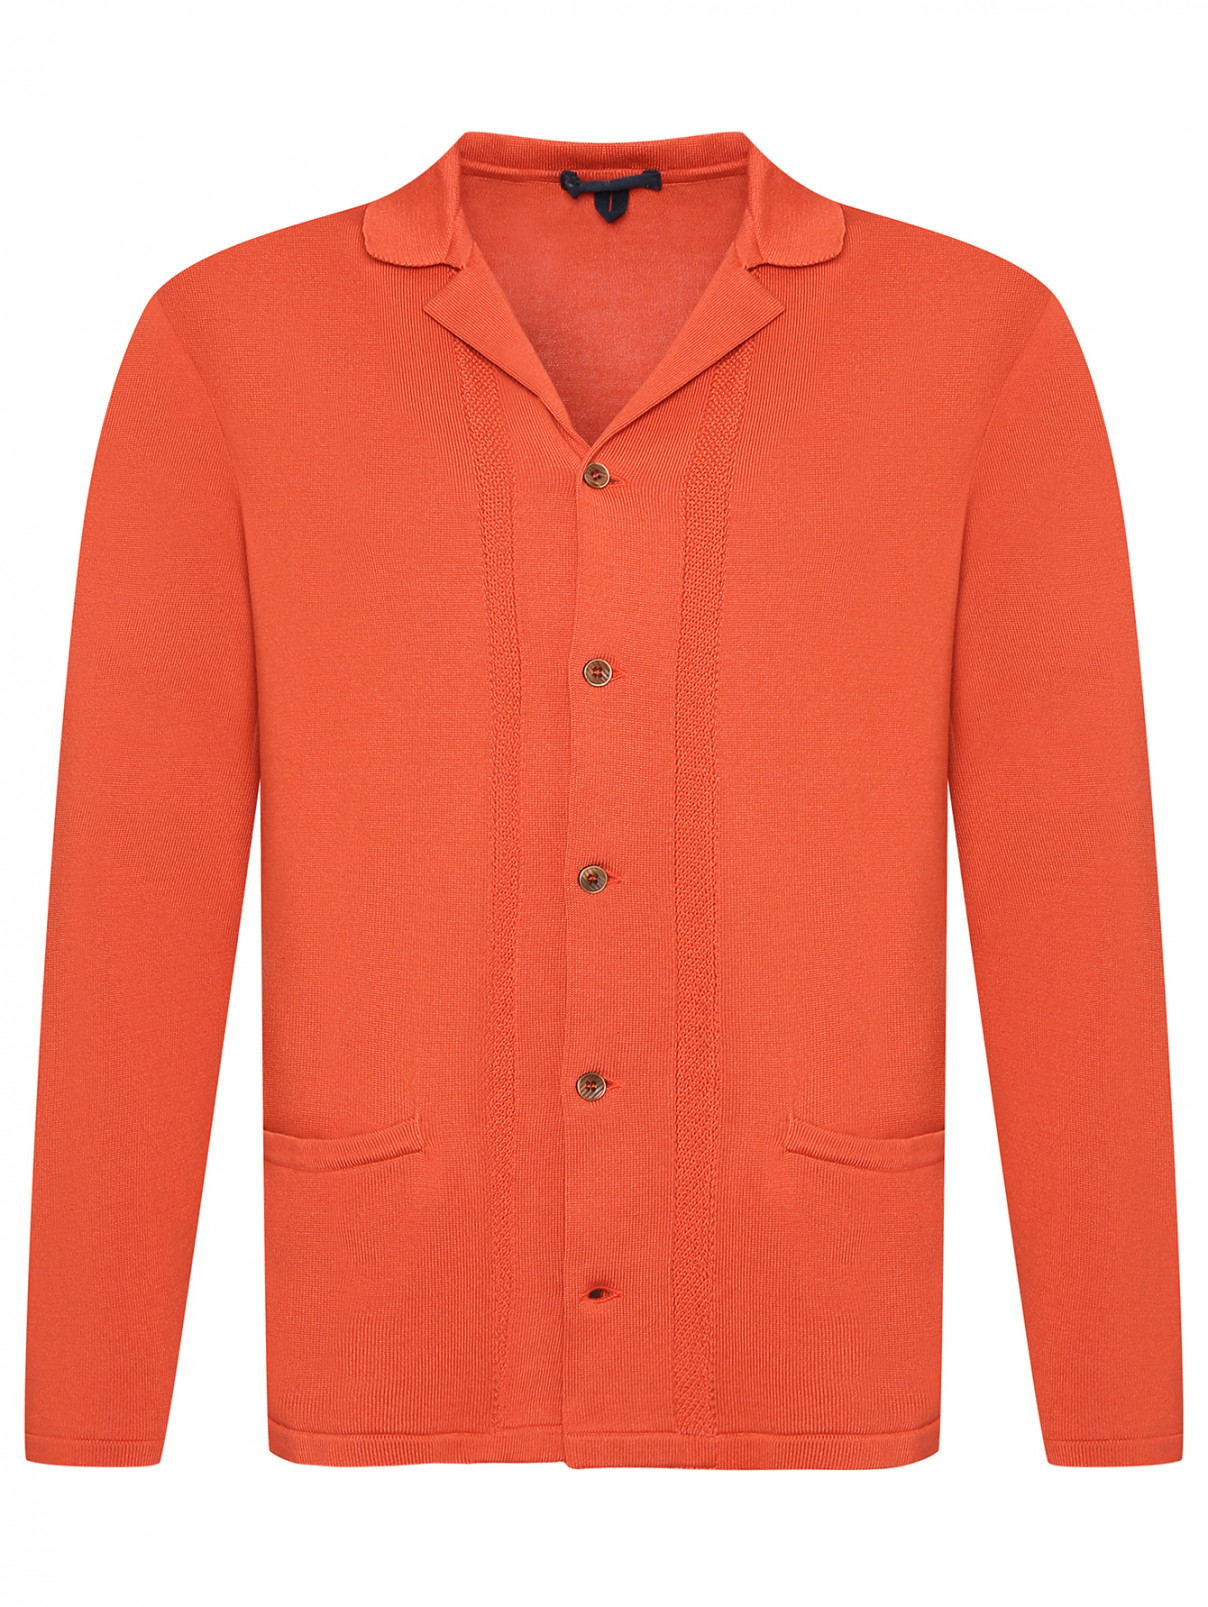 Кардиган из хлопка с карманами LARDINI  –  Общий вид  – Цвет:  Оранжевый